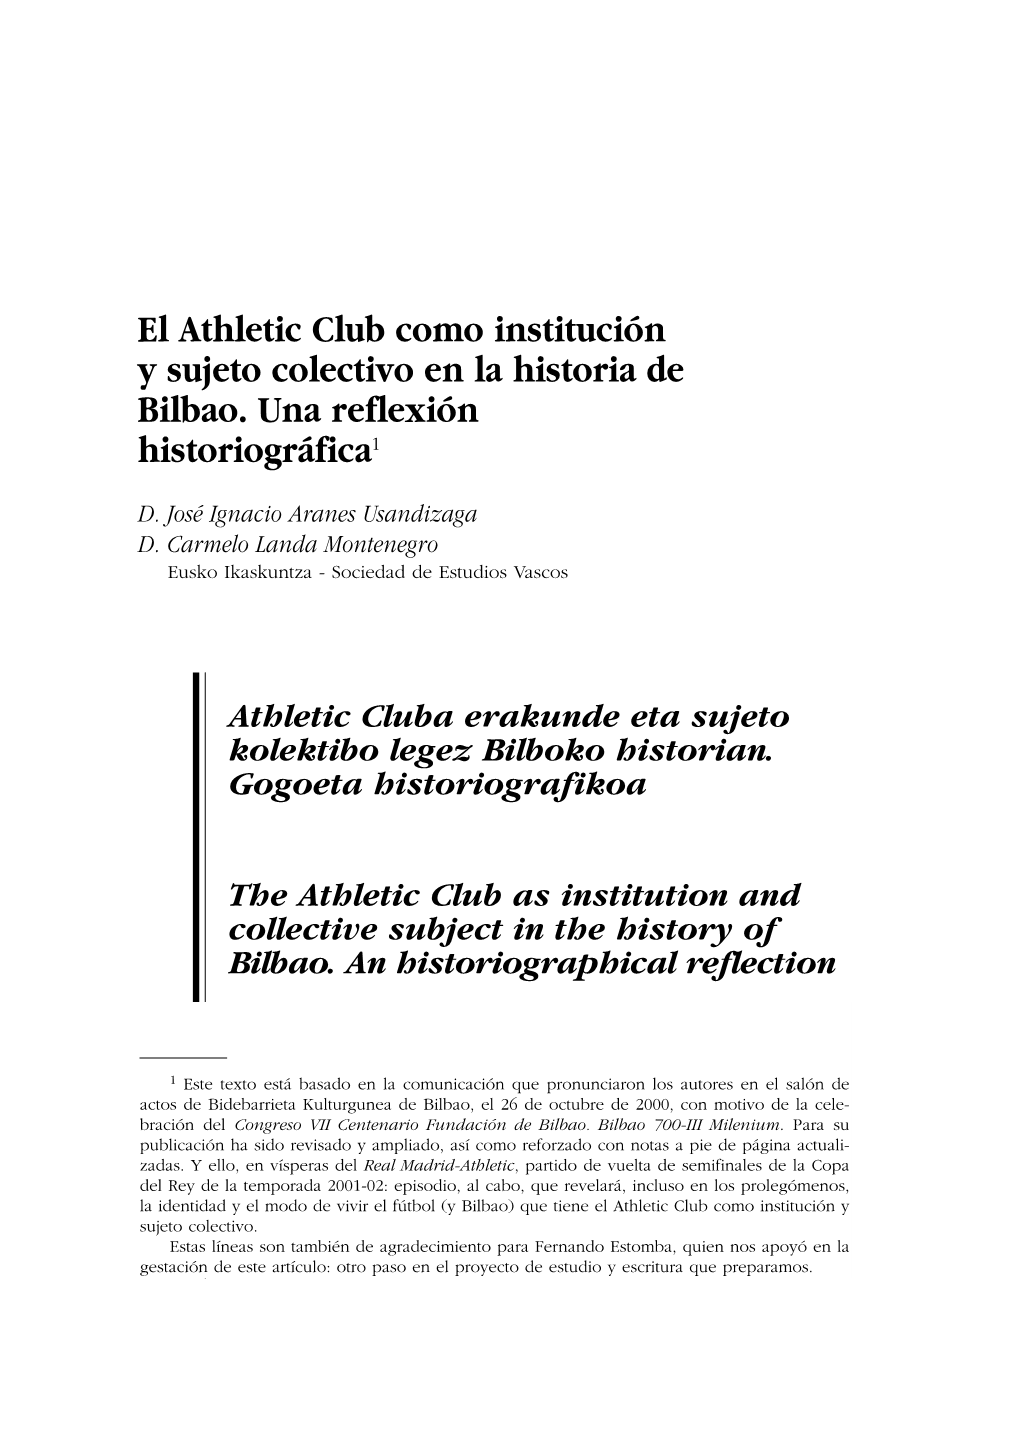 El Athletic Club Como Institución Y Sujeto Colectivo En La Historia De Bilbao